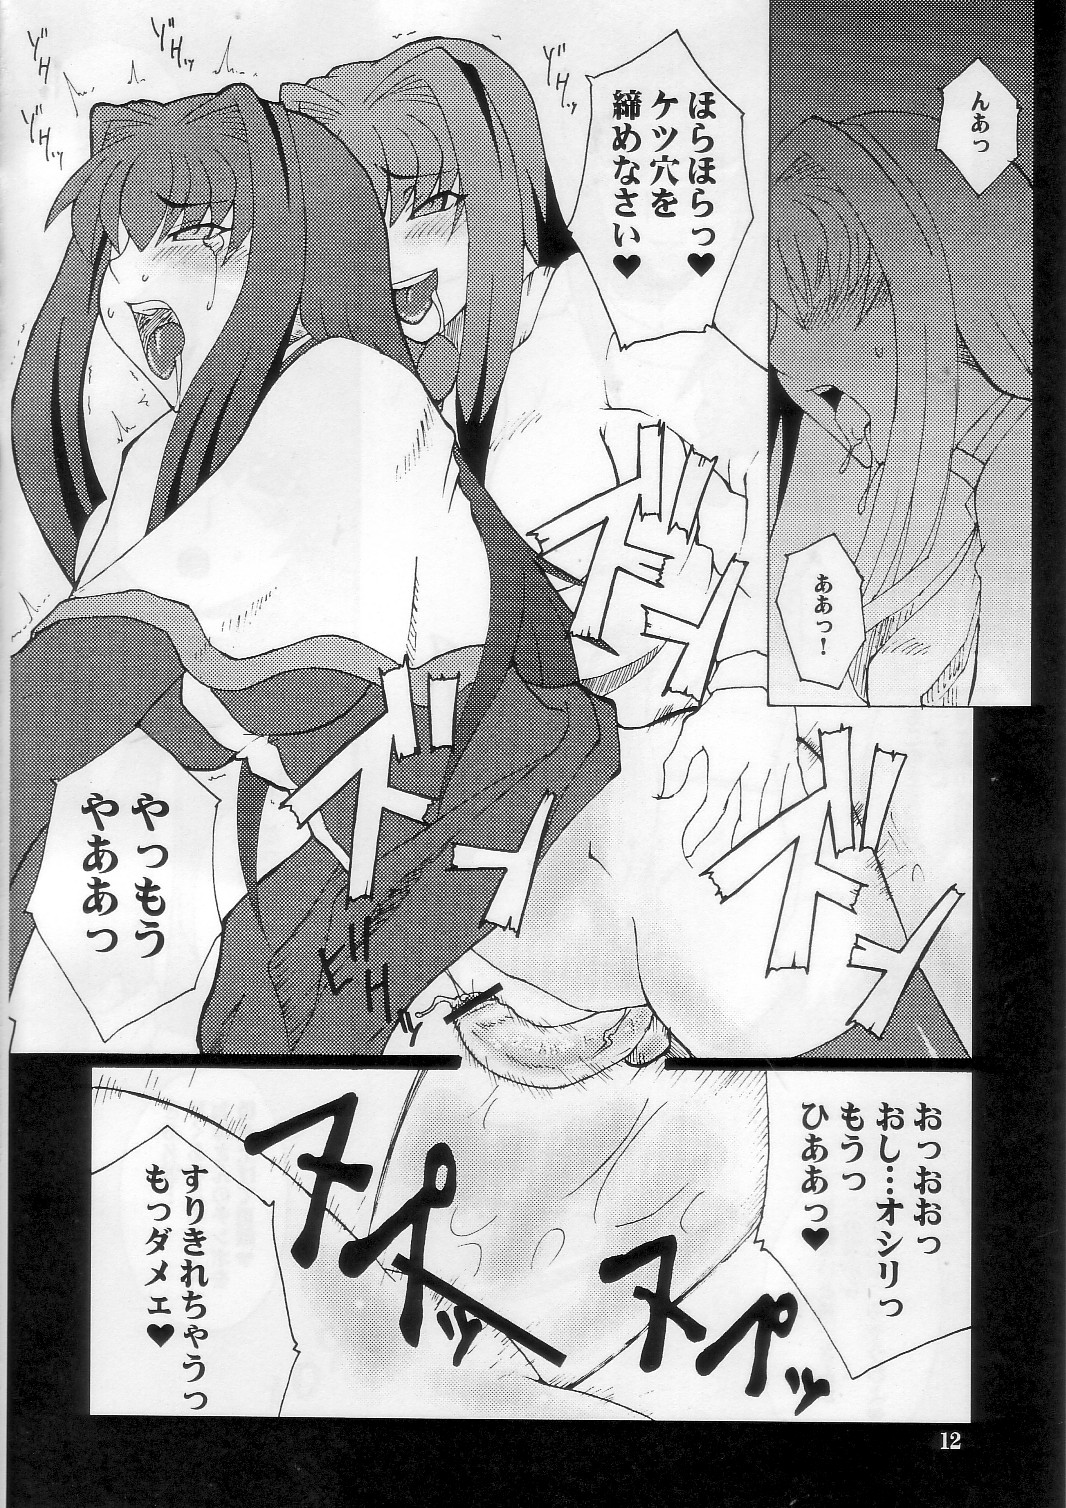 [Hanjuku Yude Tamago] Kyouki vol.5 (Kanon) page 12 full